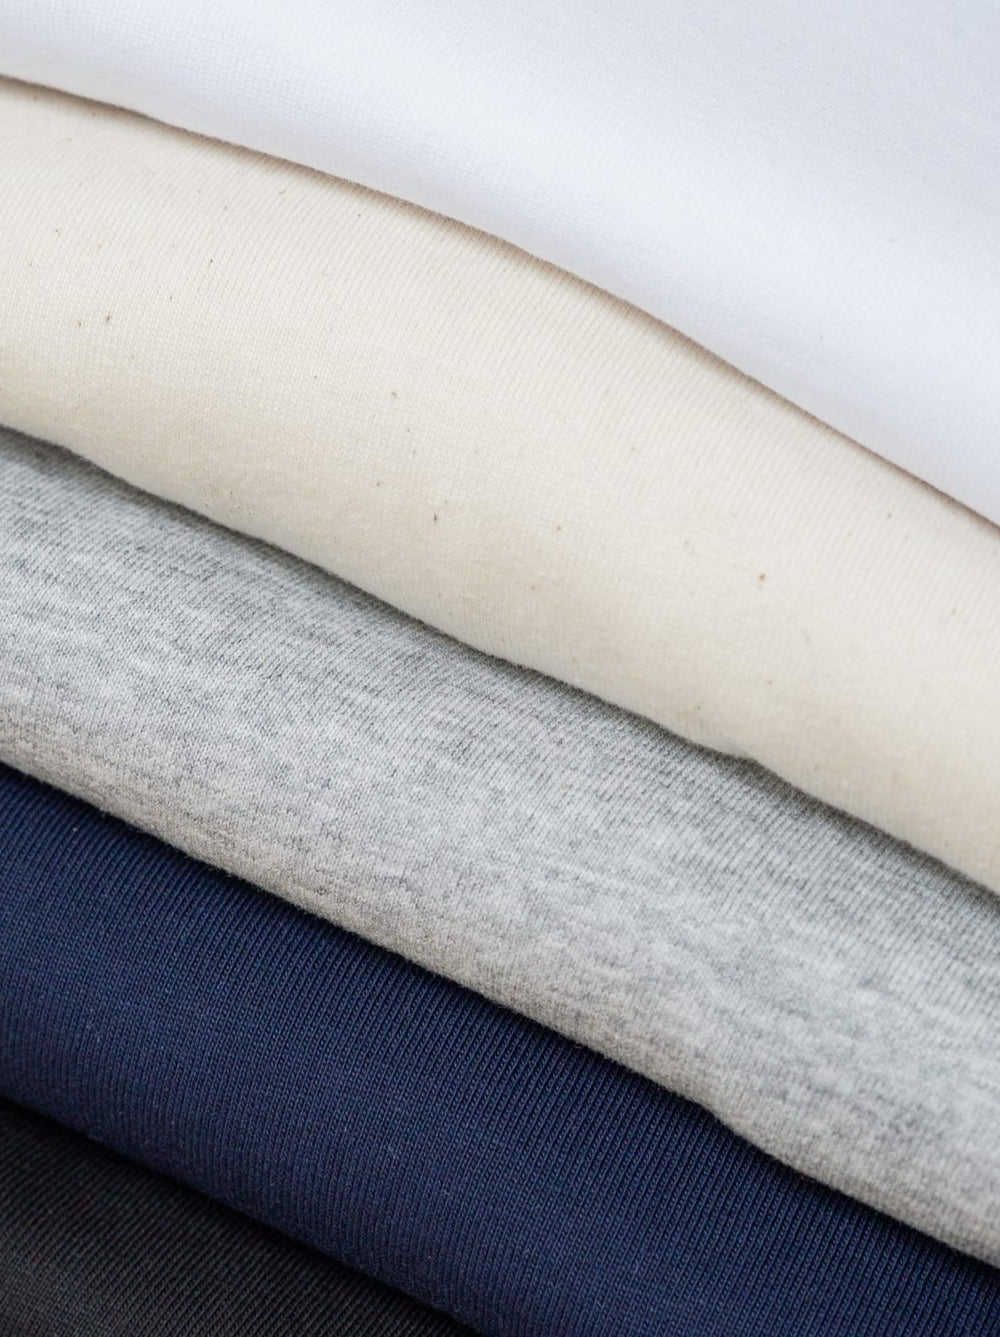 Stapel verschieden farbiger Basic T-Shirts von FUXBAU aus 100% nachhaltiger Biobaumwolle in weiß, natur, grau, navy und schwarz